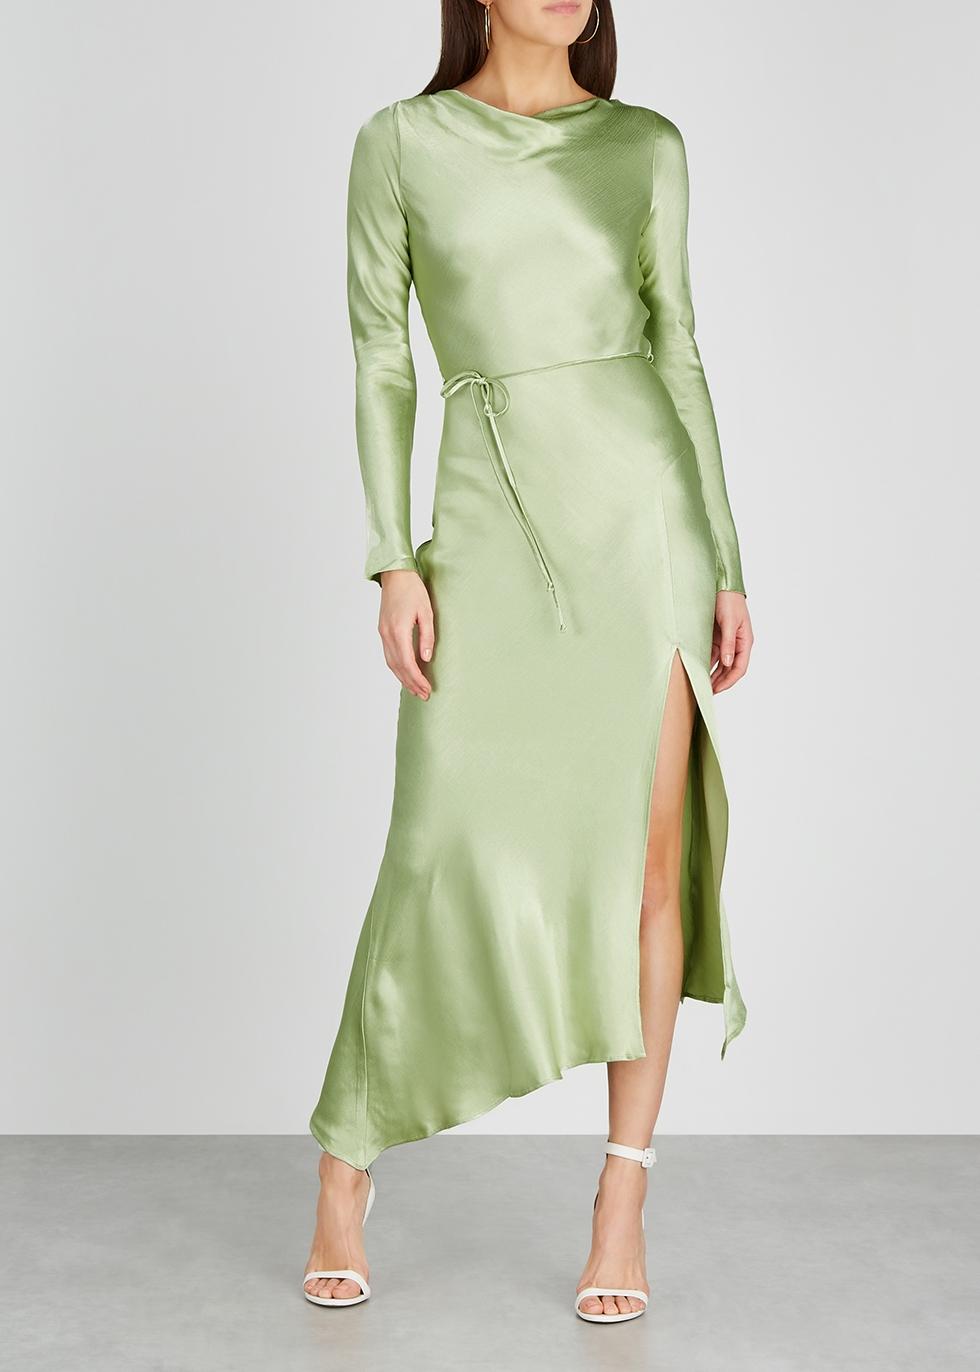 light green long sleeve dress Online Shopping